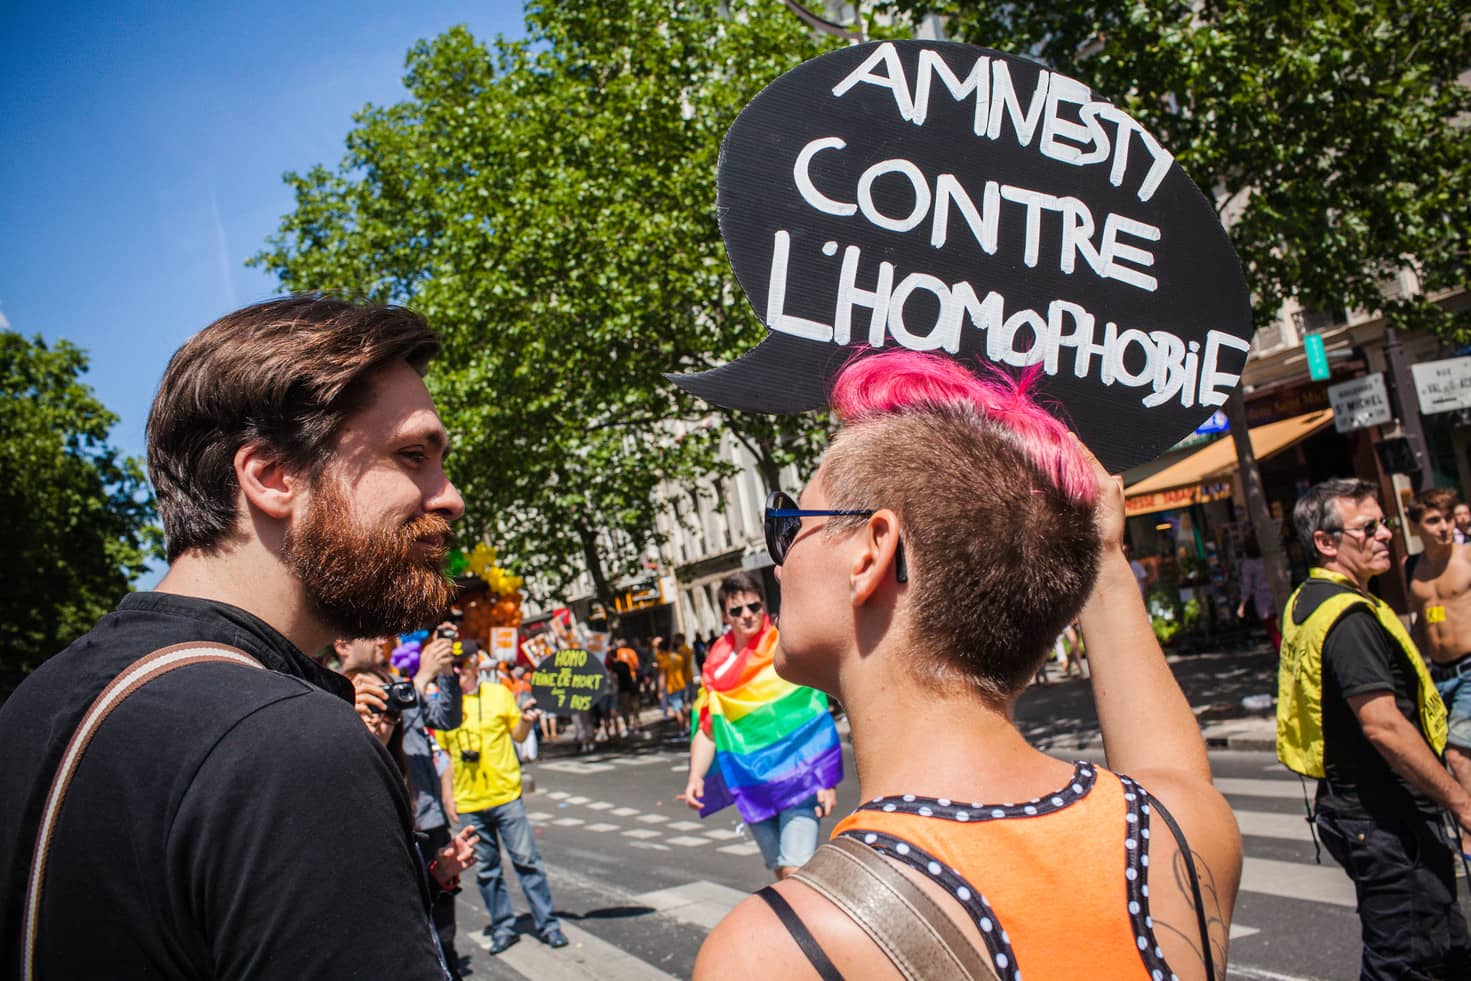 Dos personas en la Marcha del Orgullo en París portan una pancarta que pone "Amnesty contre l'homophobie"